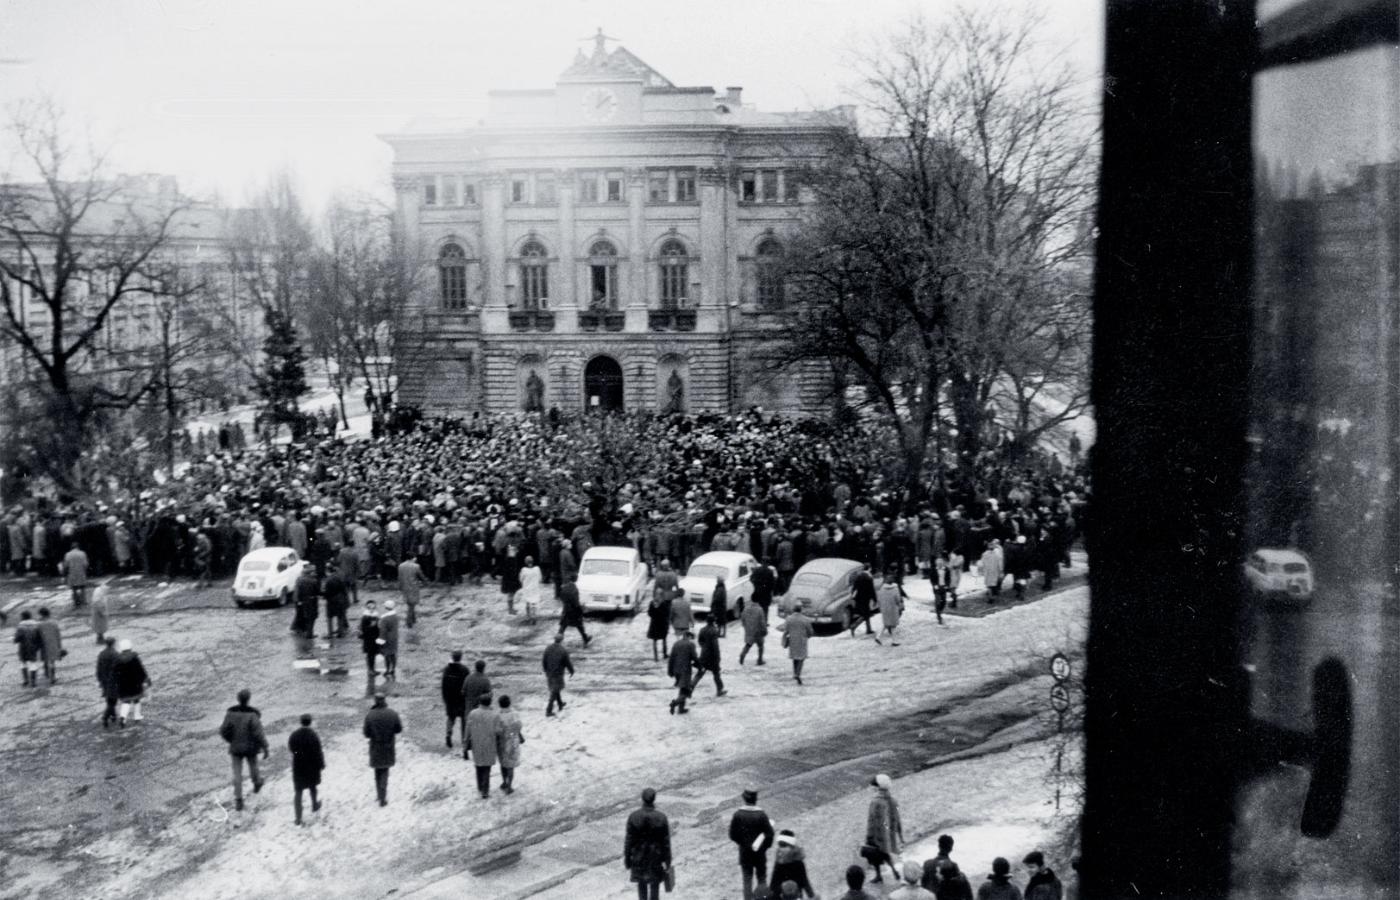 Wiec na Uniwersytecie Warszawskim, 8 marca 1968 r.